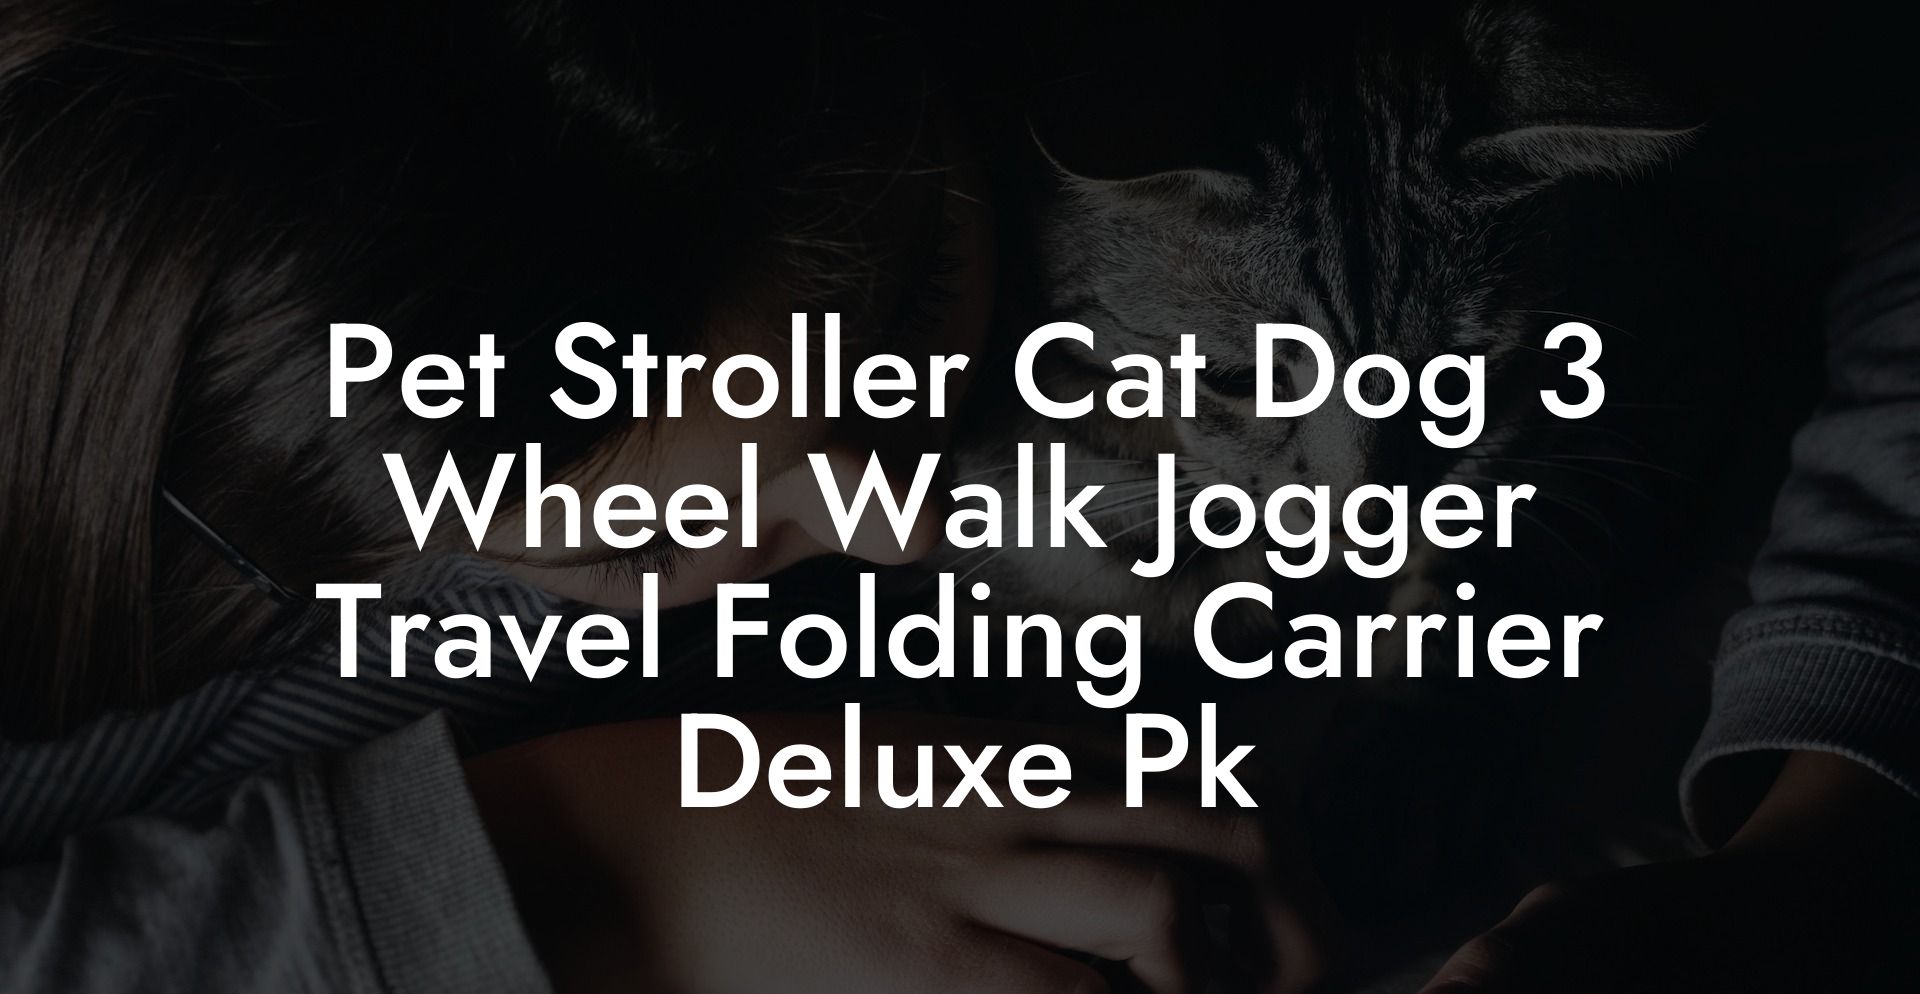 Pet Stroller Cat Dog 3 Wheel Walk Jogger Travel Folding Carrier Deluxe Pk